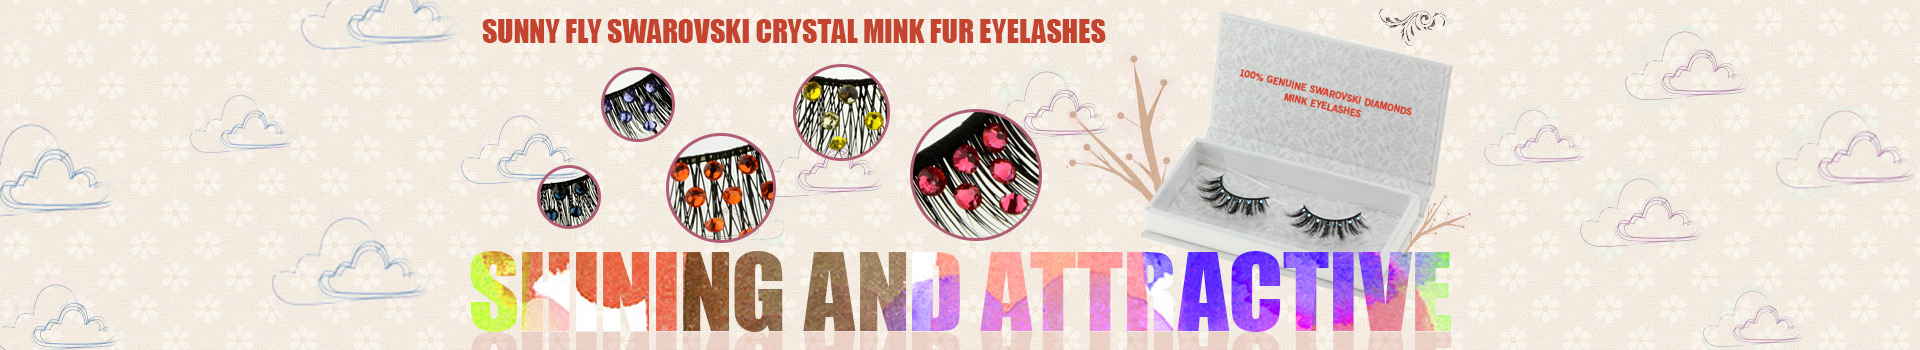 Swarovski Crystal Mink Fur Eyelashes MS31